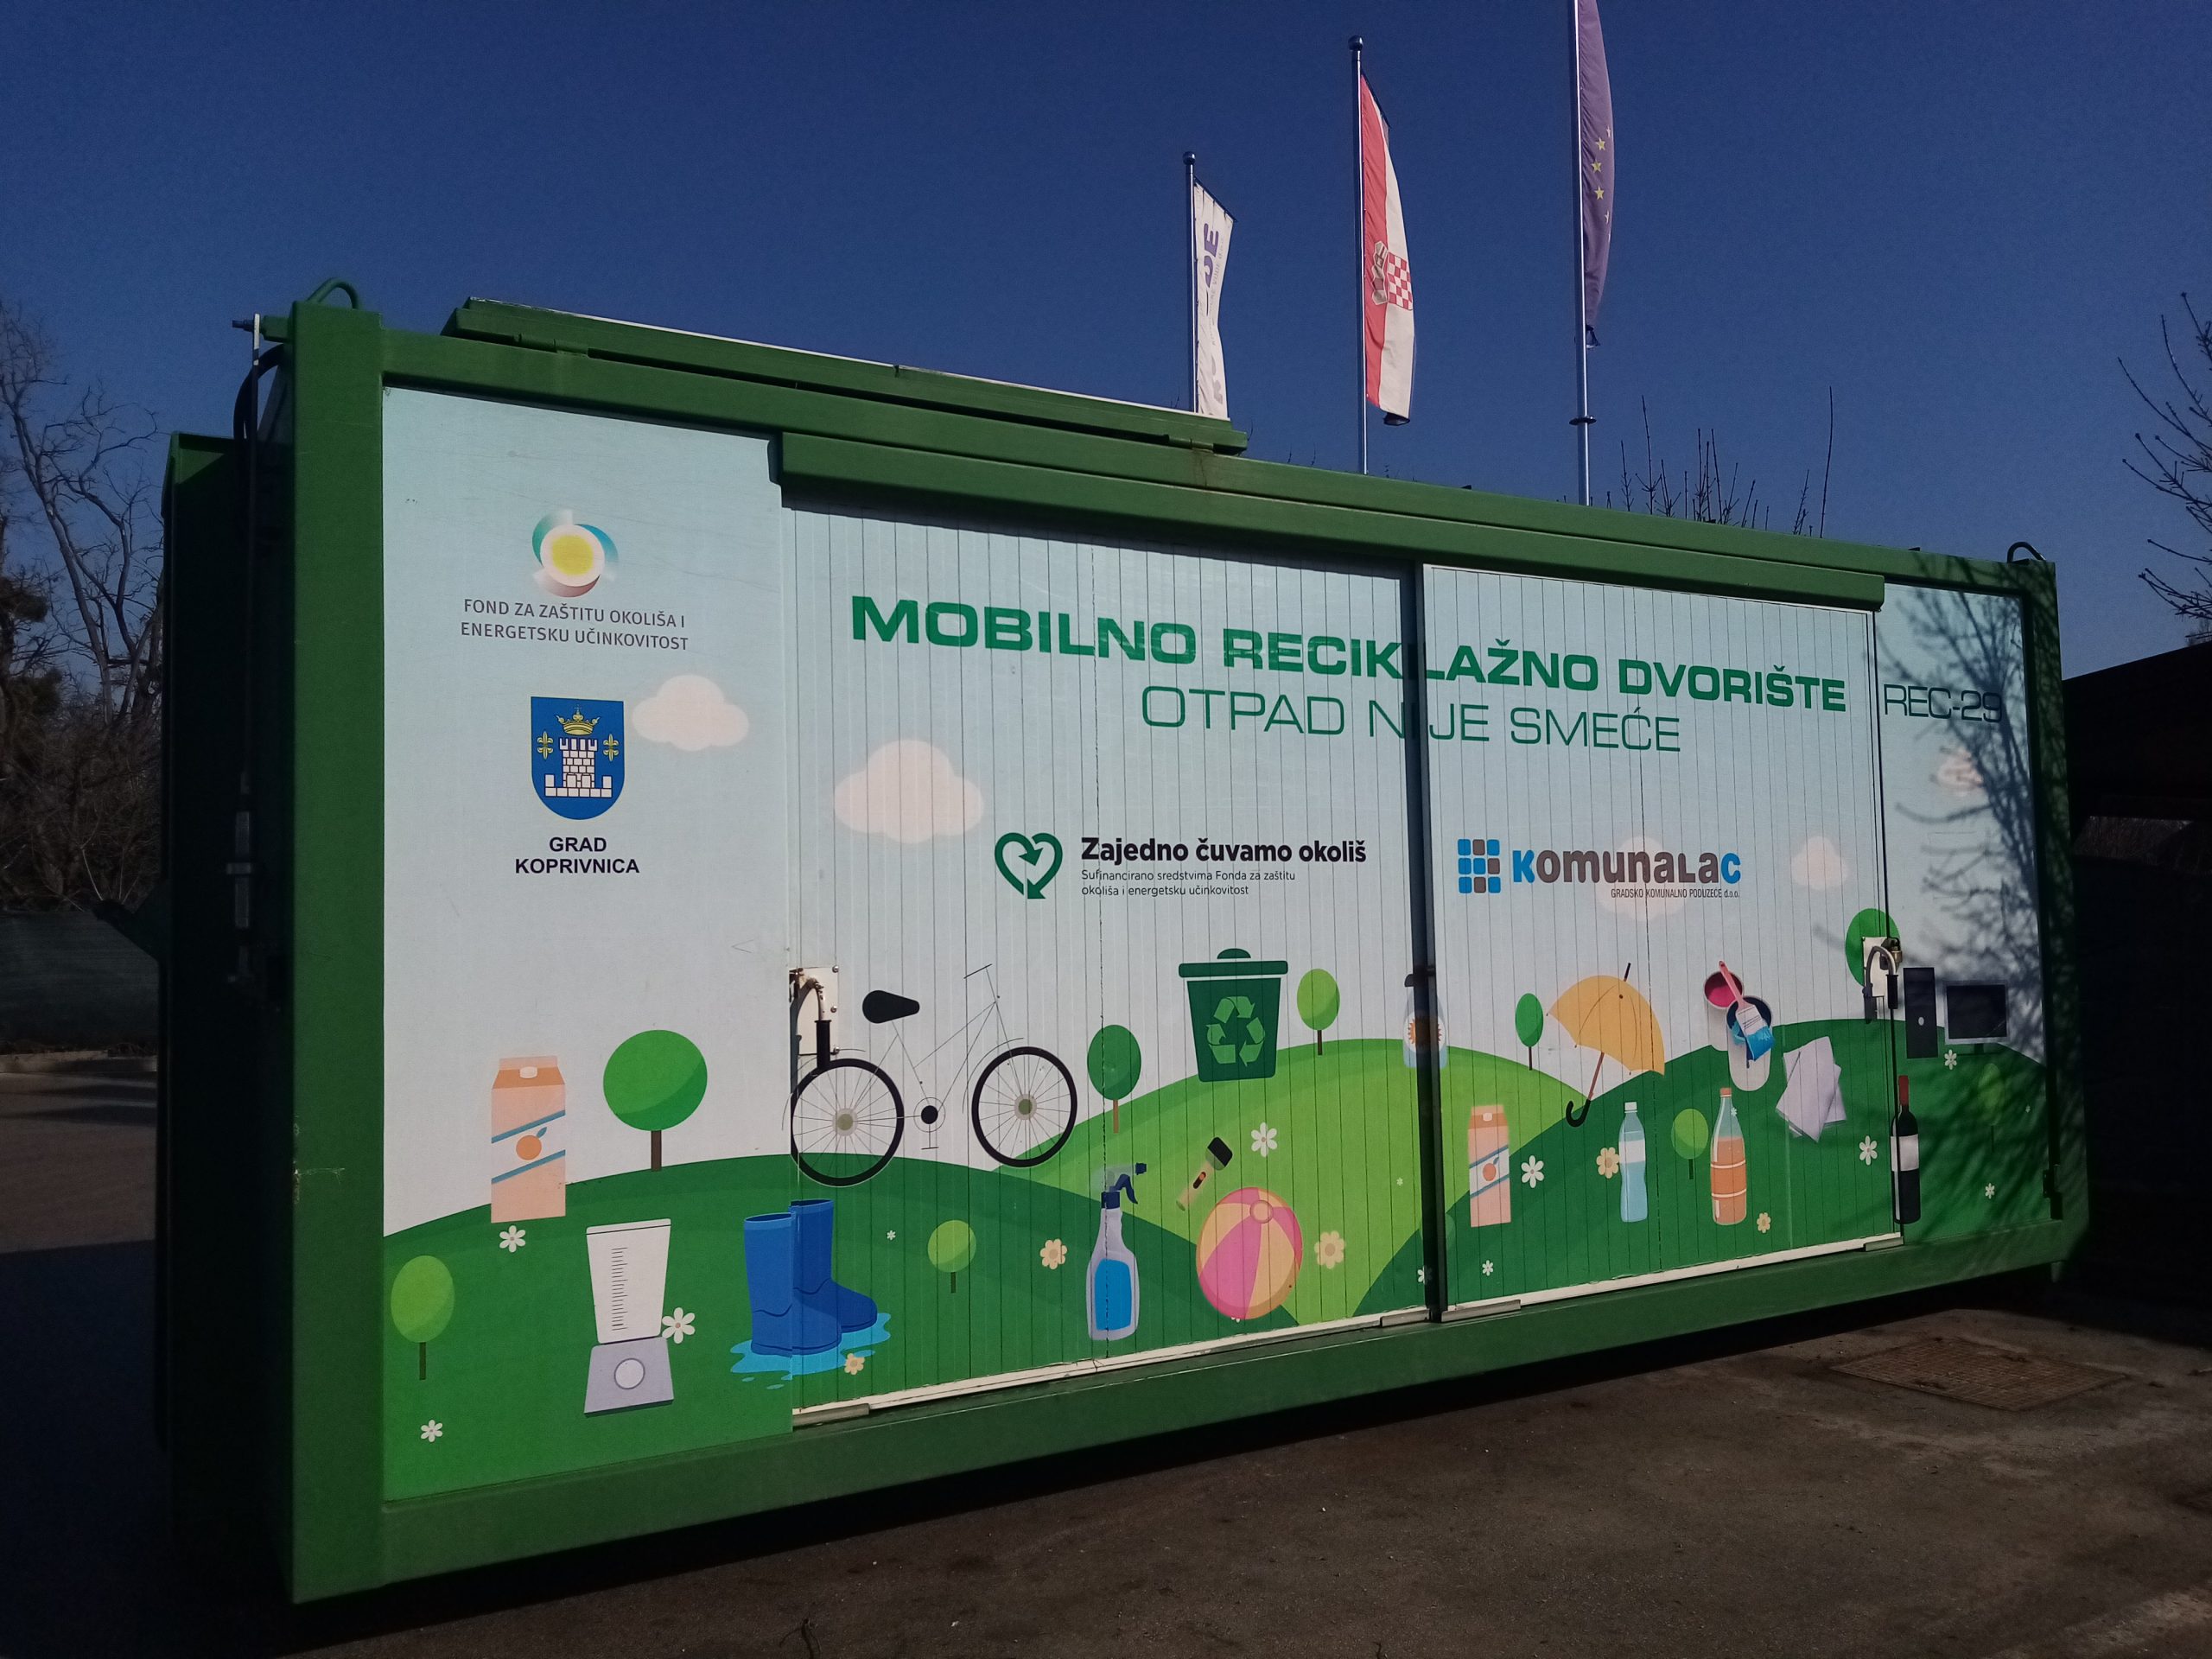 Mobilno reciklažno dvorište u utorak, 9. studenog, nalazit će se u općini Novigrad Podravski